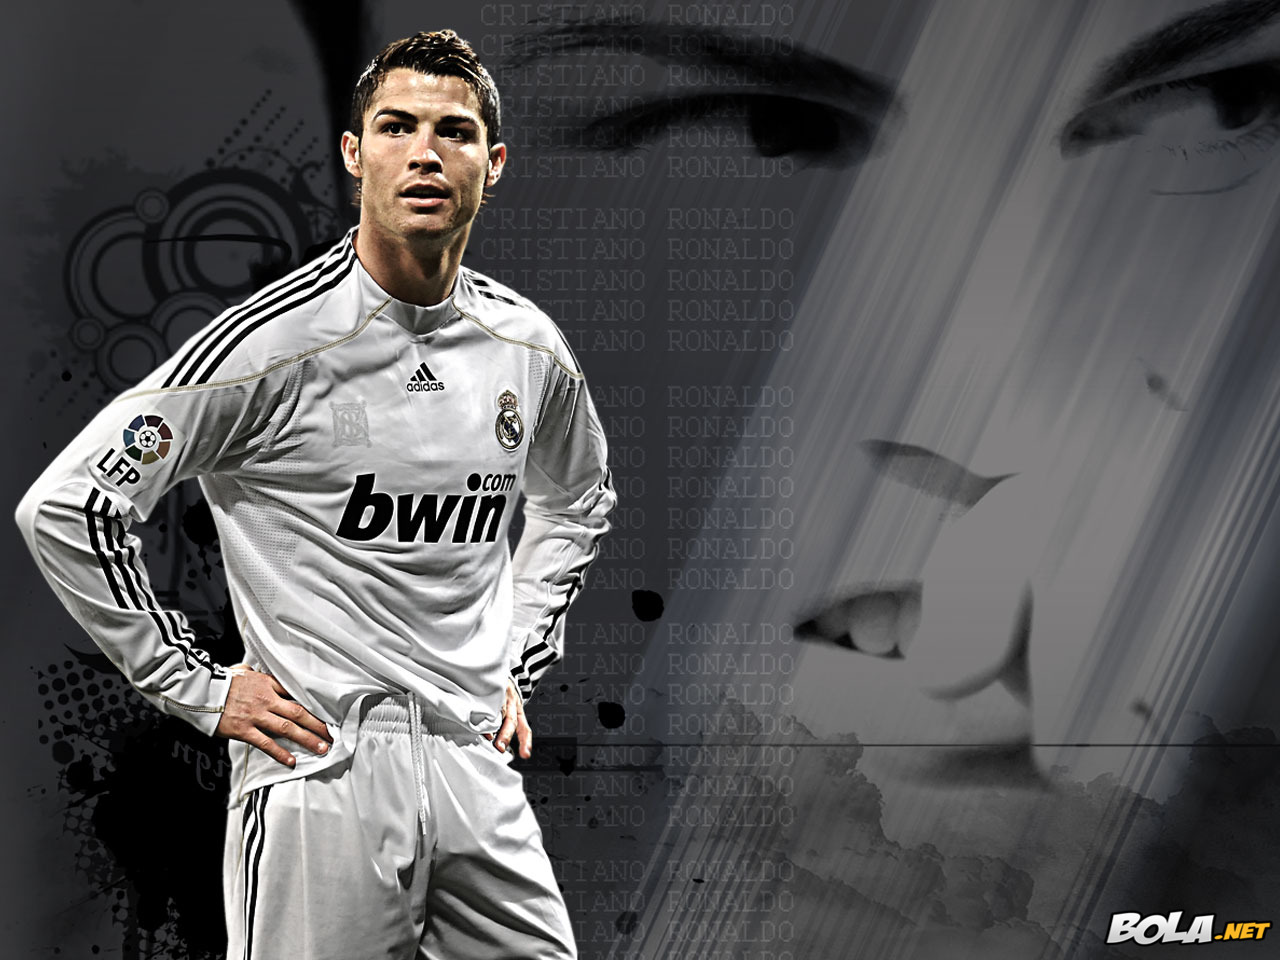 Koleksi Wallpaper Cristiano Ronaldo di Real Madrid